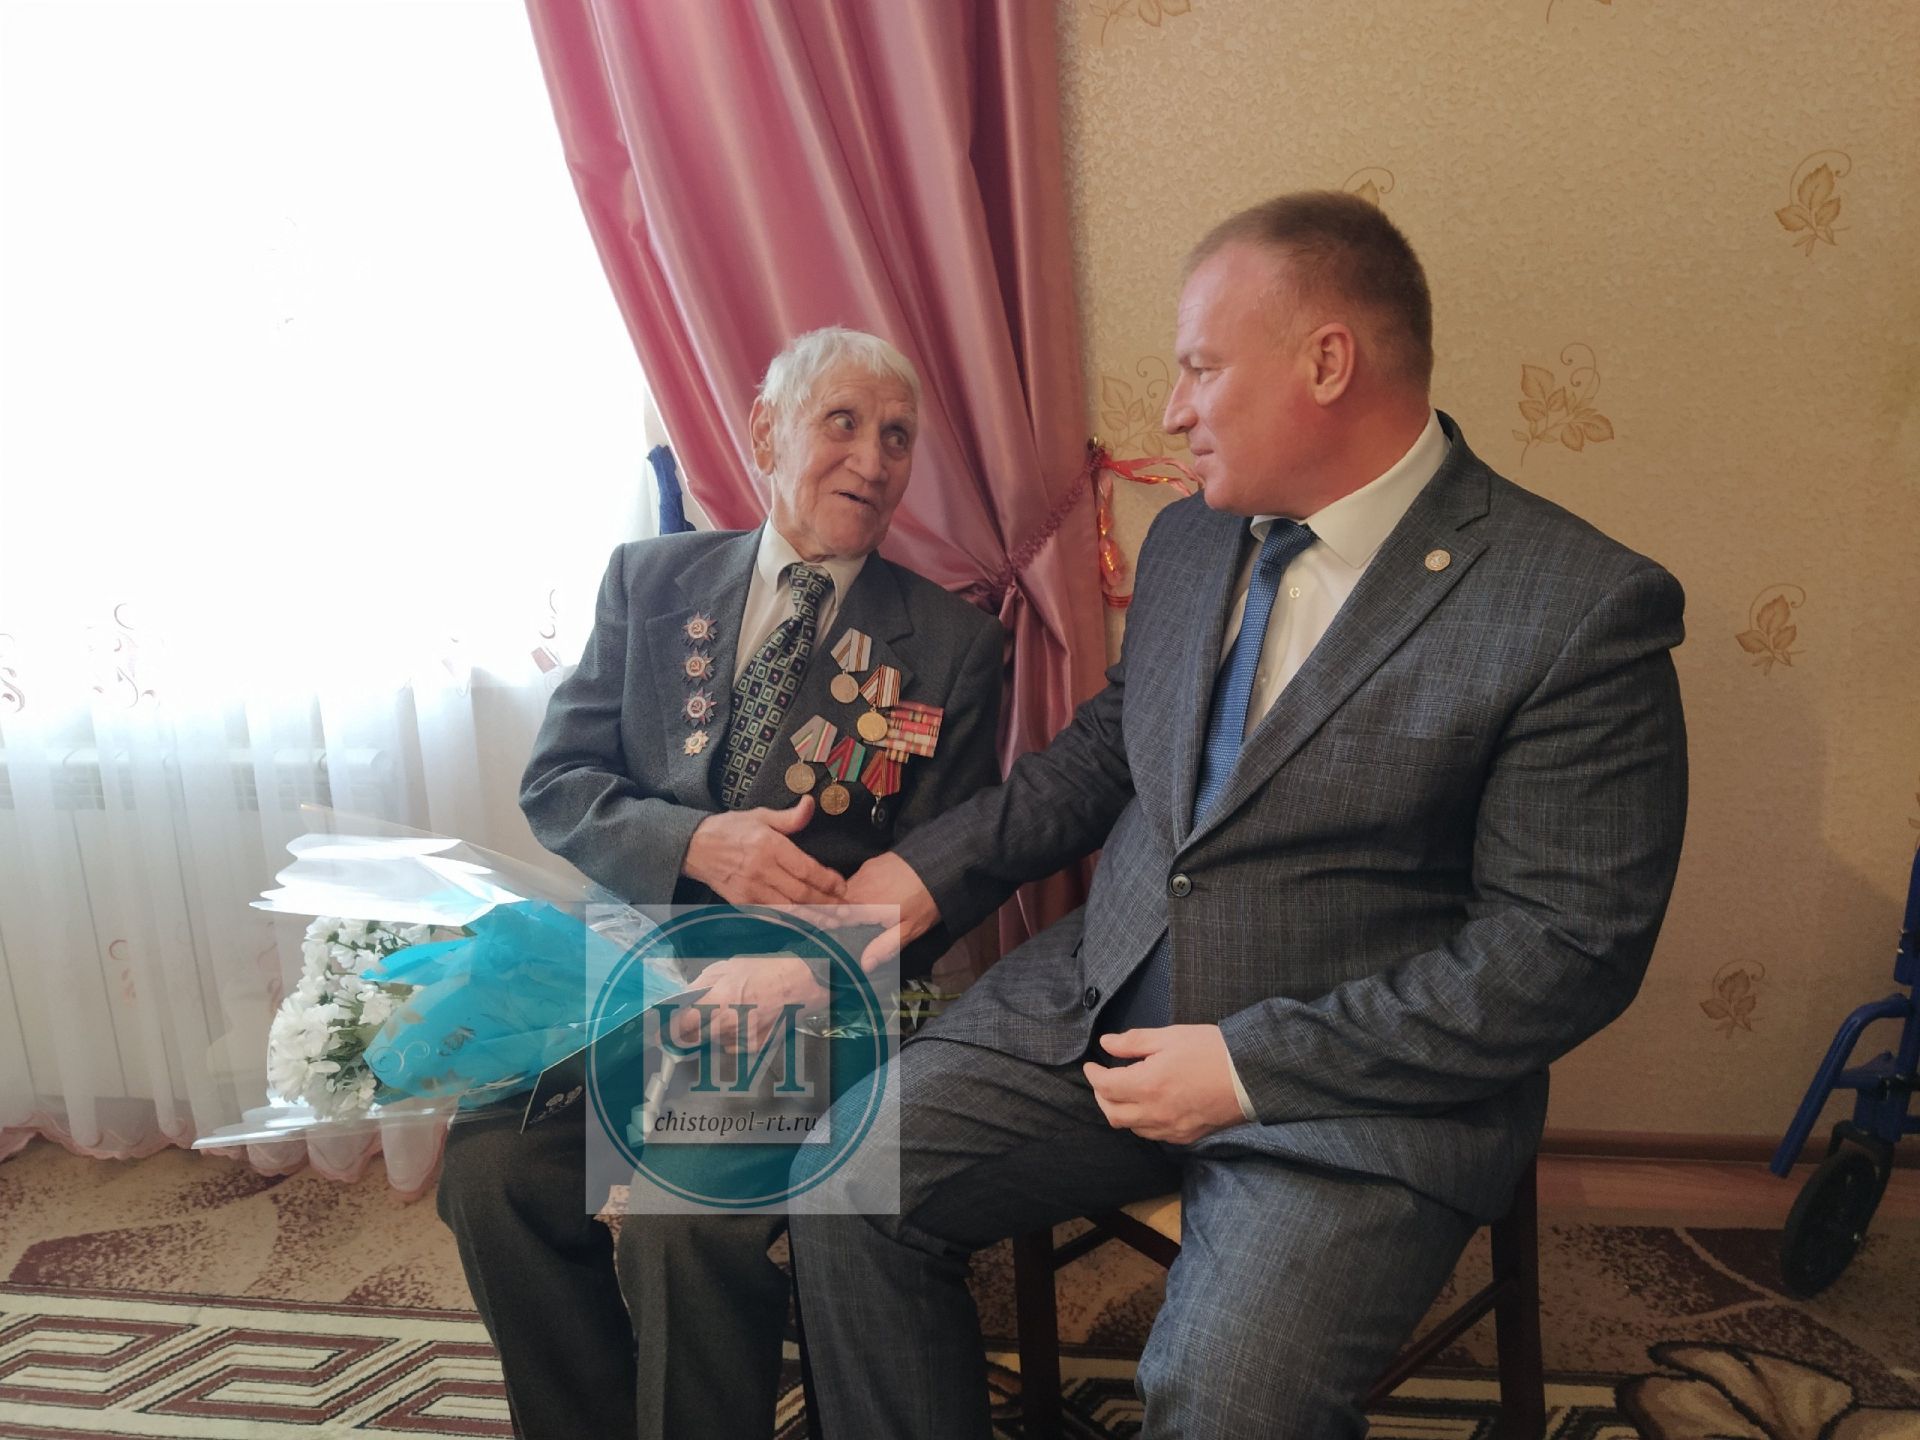 Чистопольскому ветерану в день рождения вручили юбилейную медаль